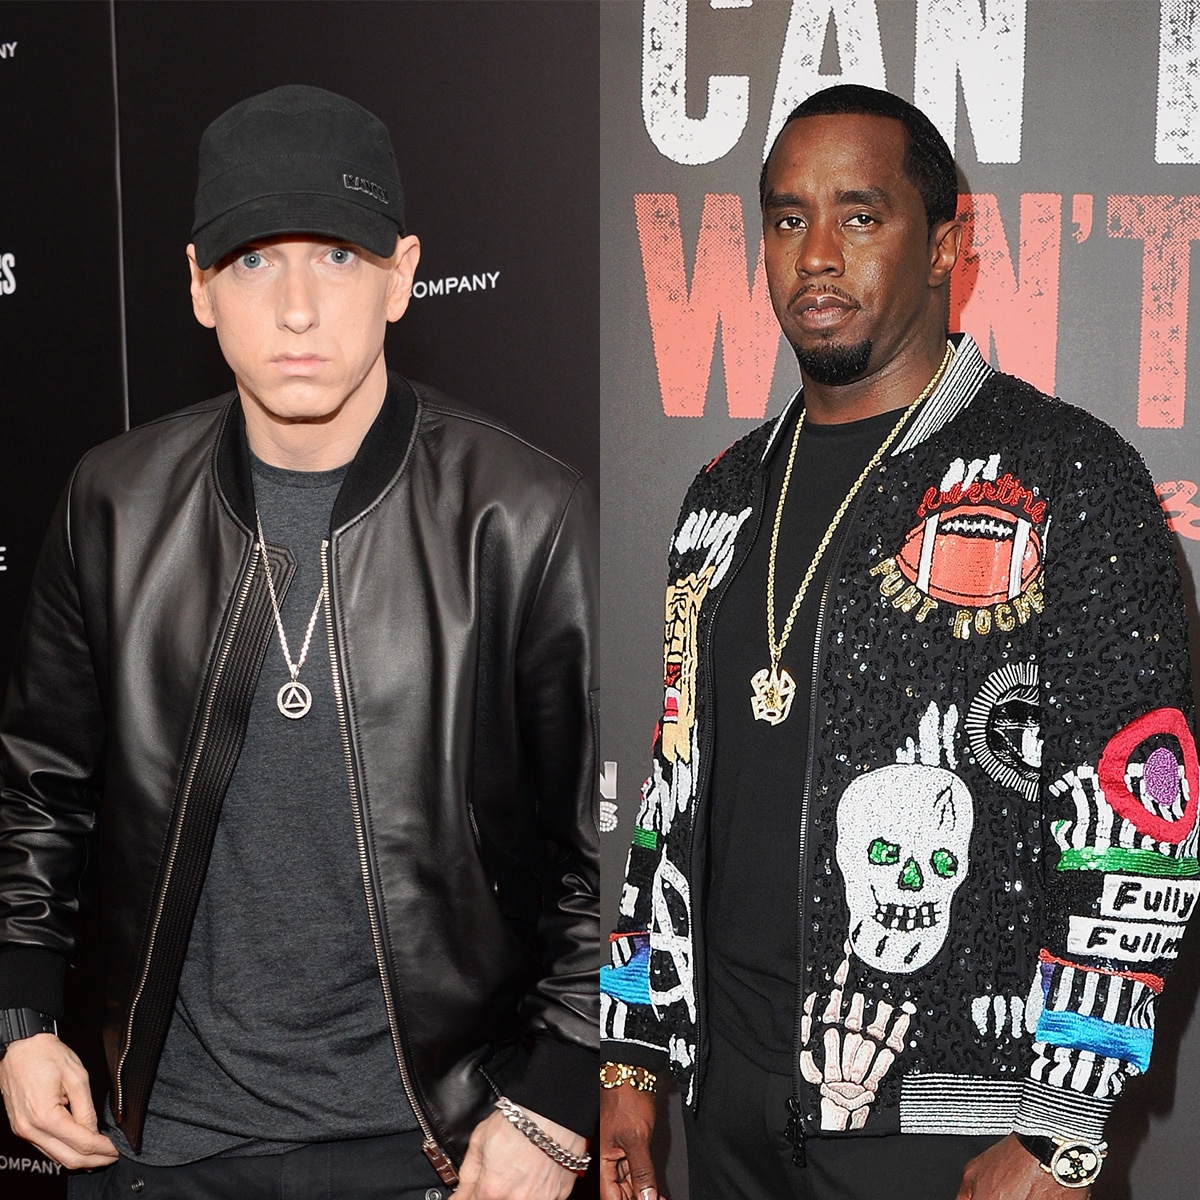 Eminem apunta a Sean "Diddy" Combs y hace referencia al incidente con Cassie en su nueva canción